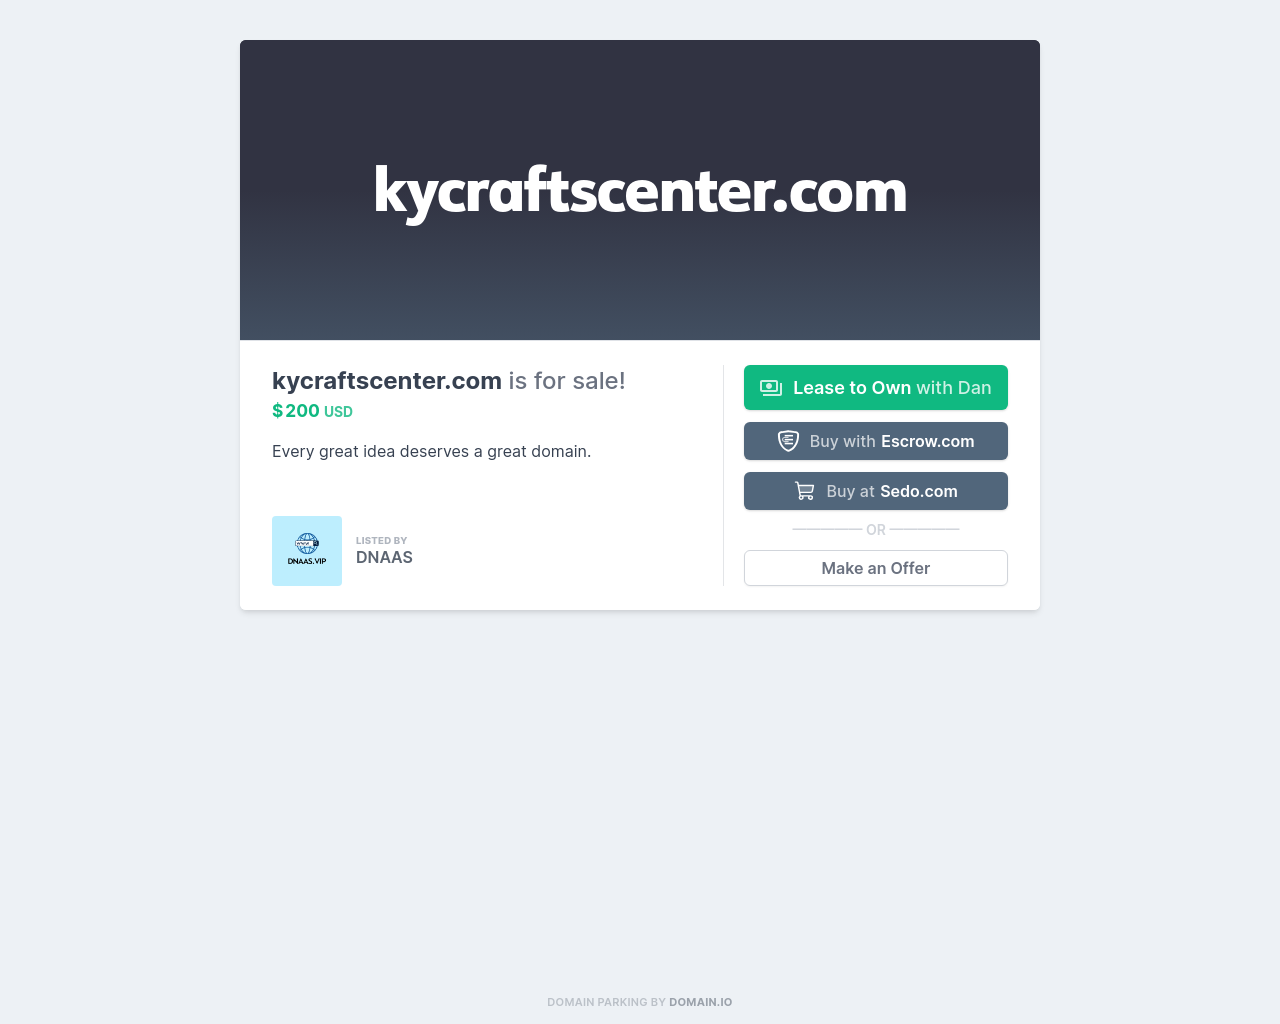 kycraftscenter.com